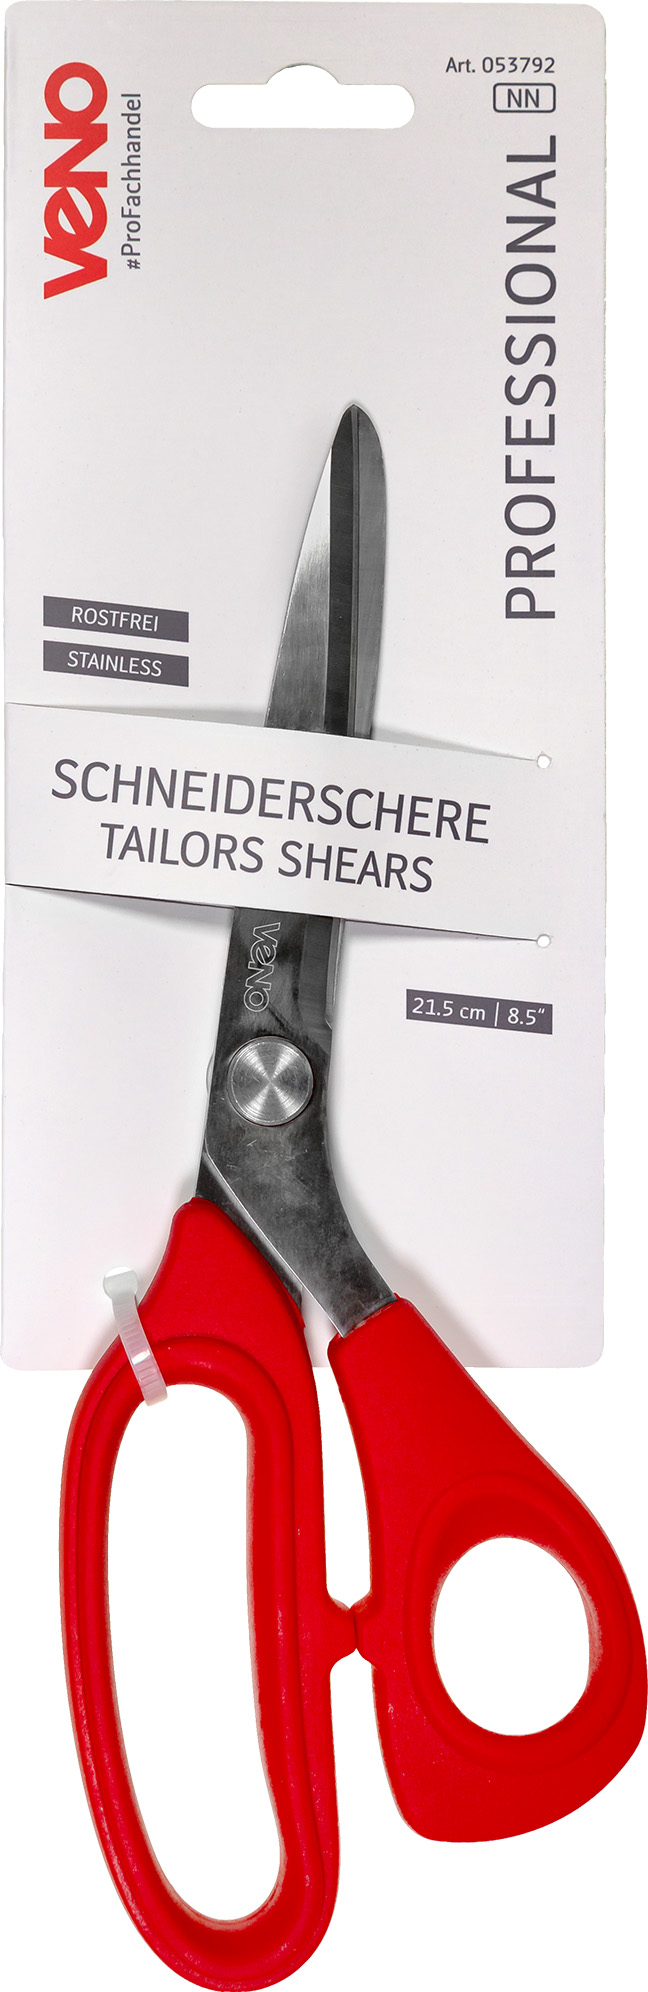 Schneiderschere Professional 21,5 cm